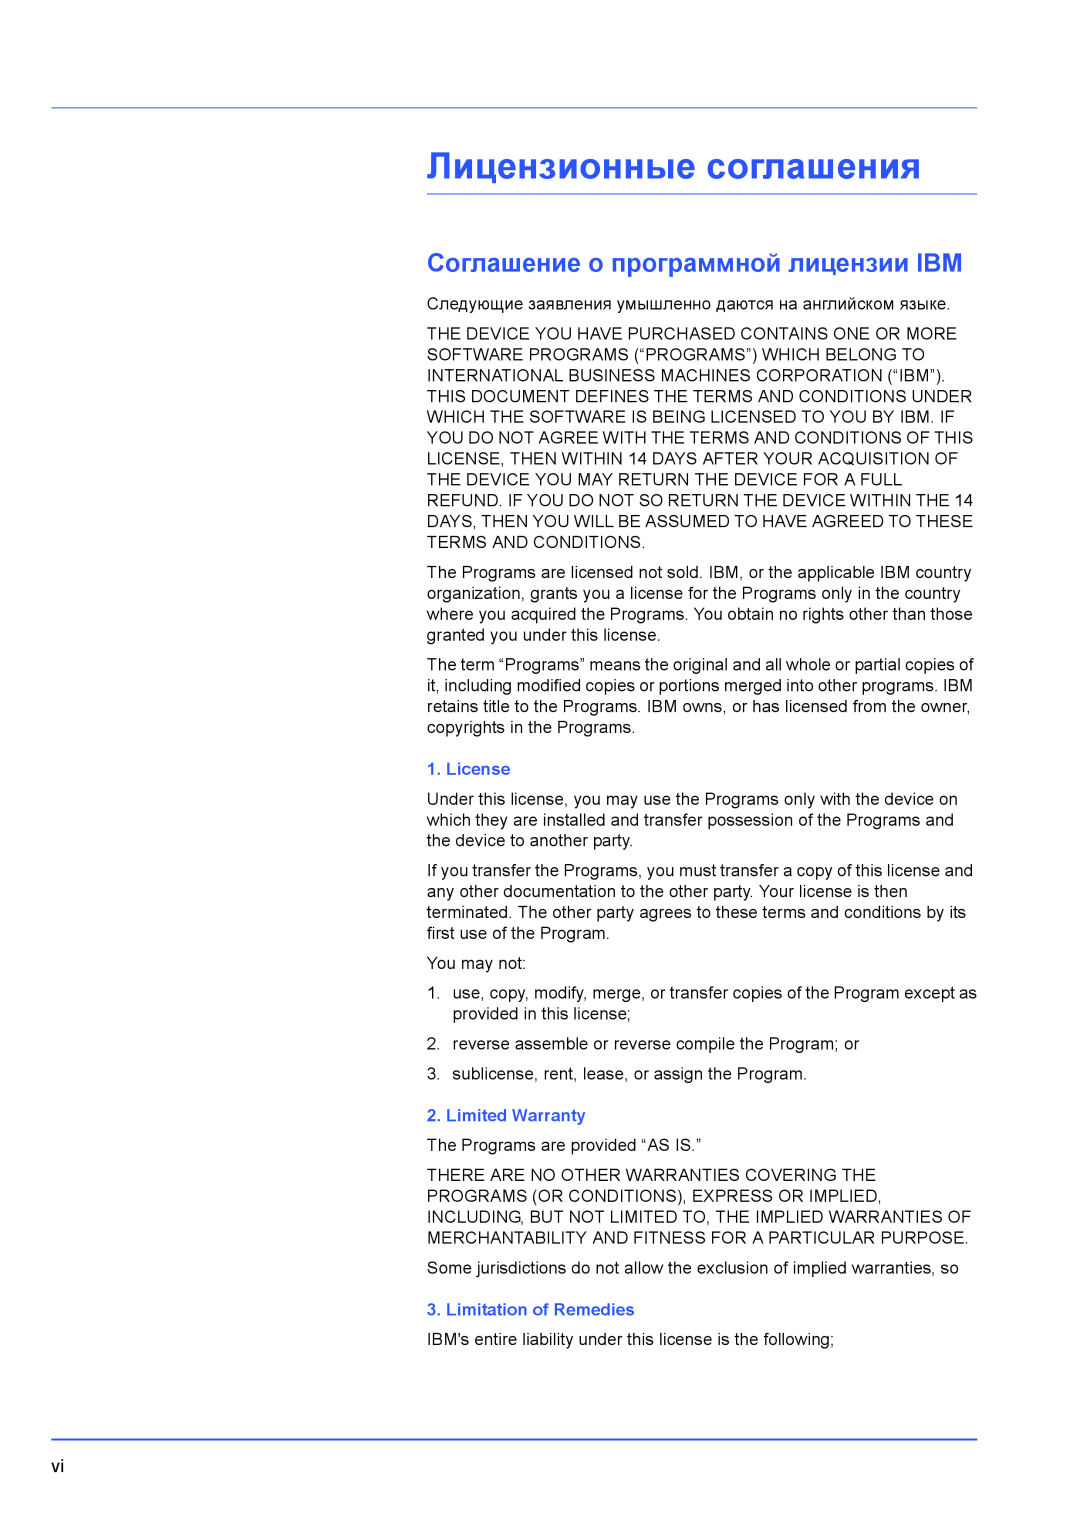 Kyocera FS-1300D, FS-1100 manual Лицензионные соглашения, Соглашение о программной лицензии IBM, License, Limited Warranty 